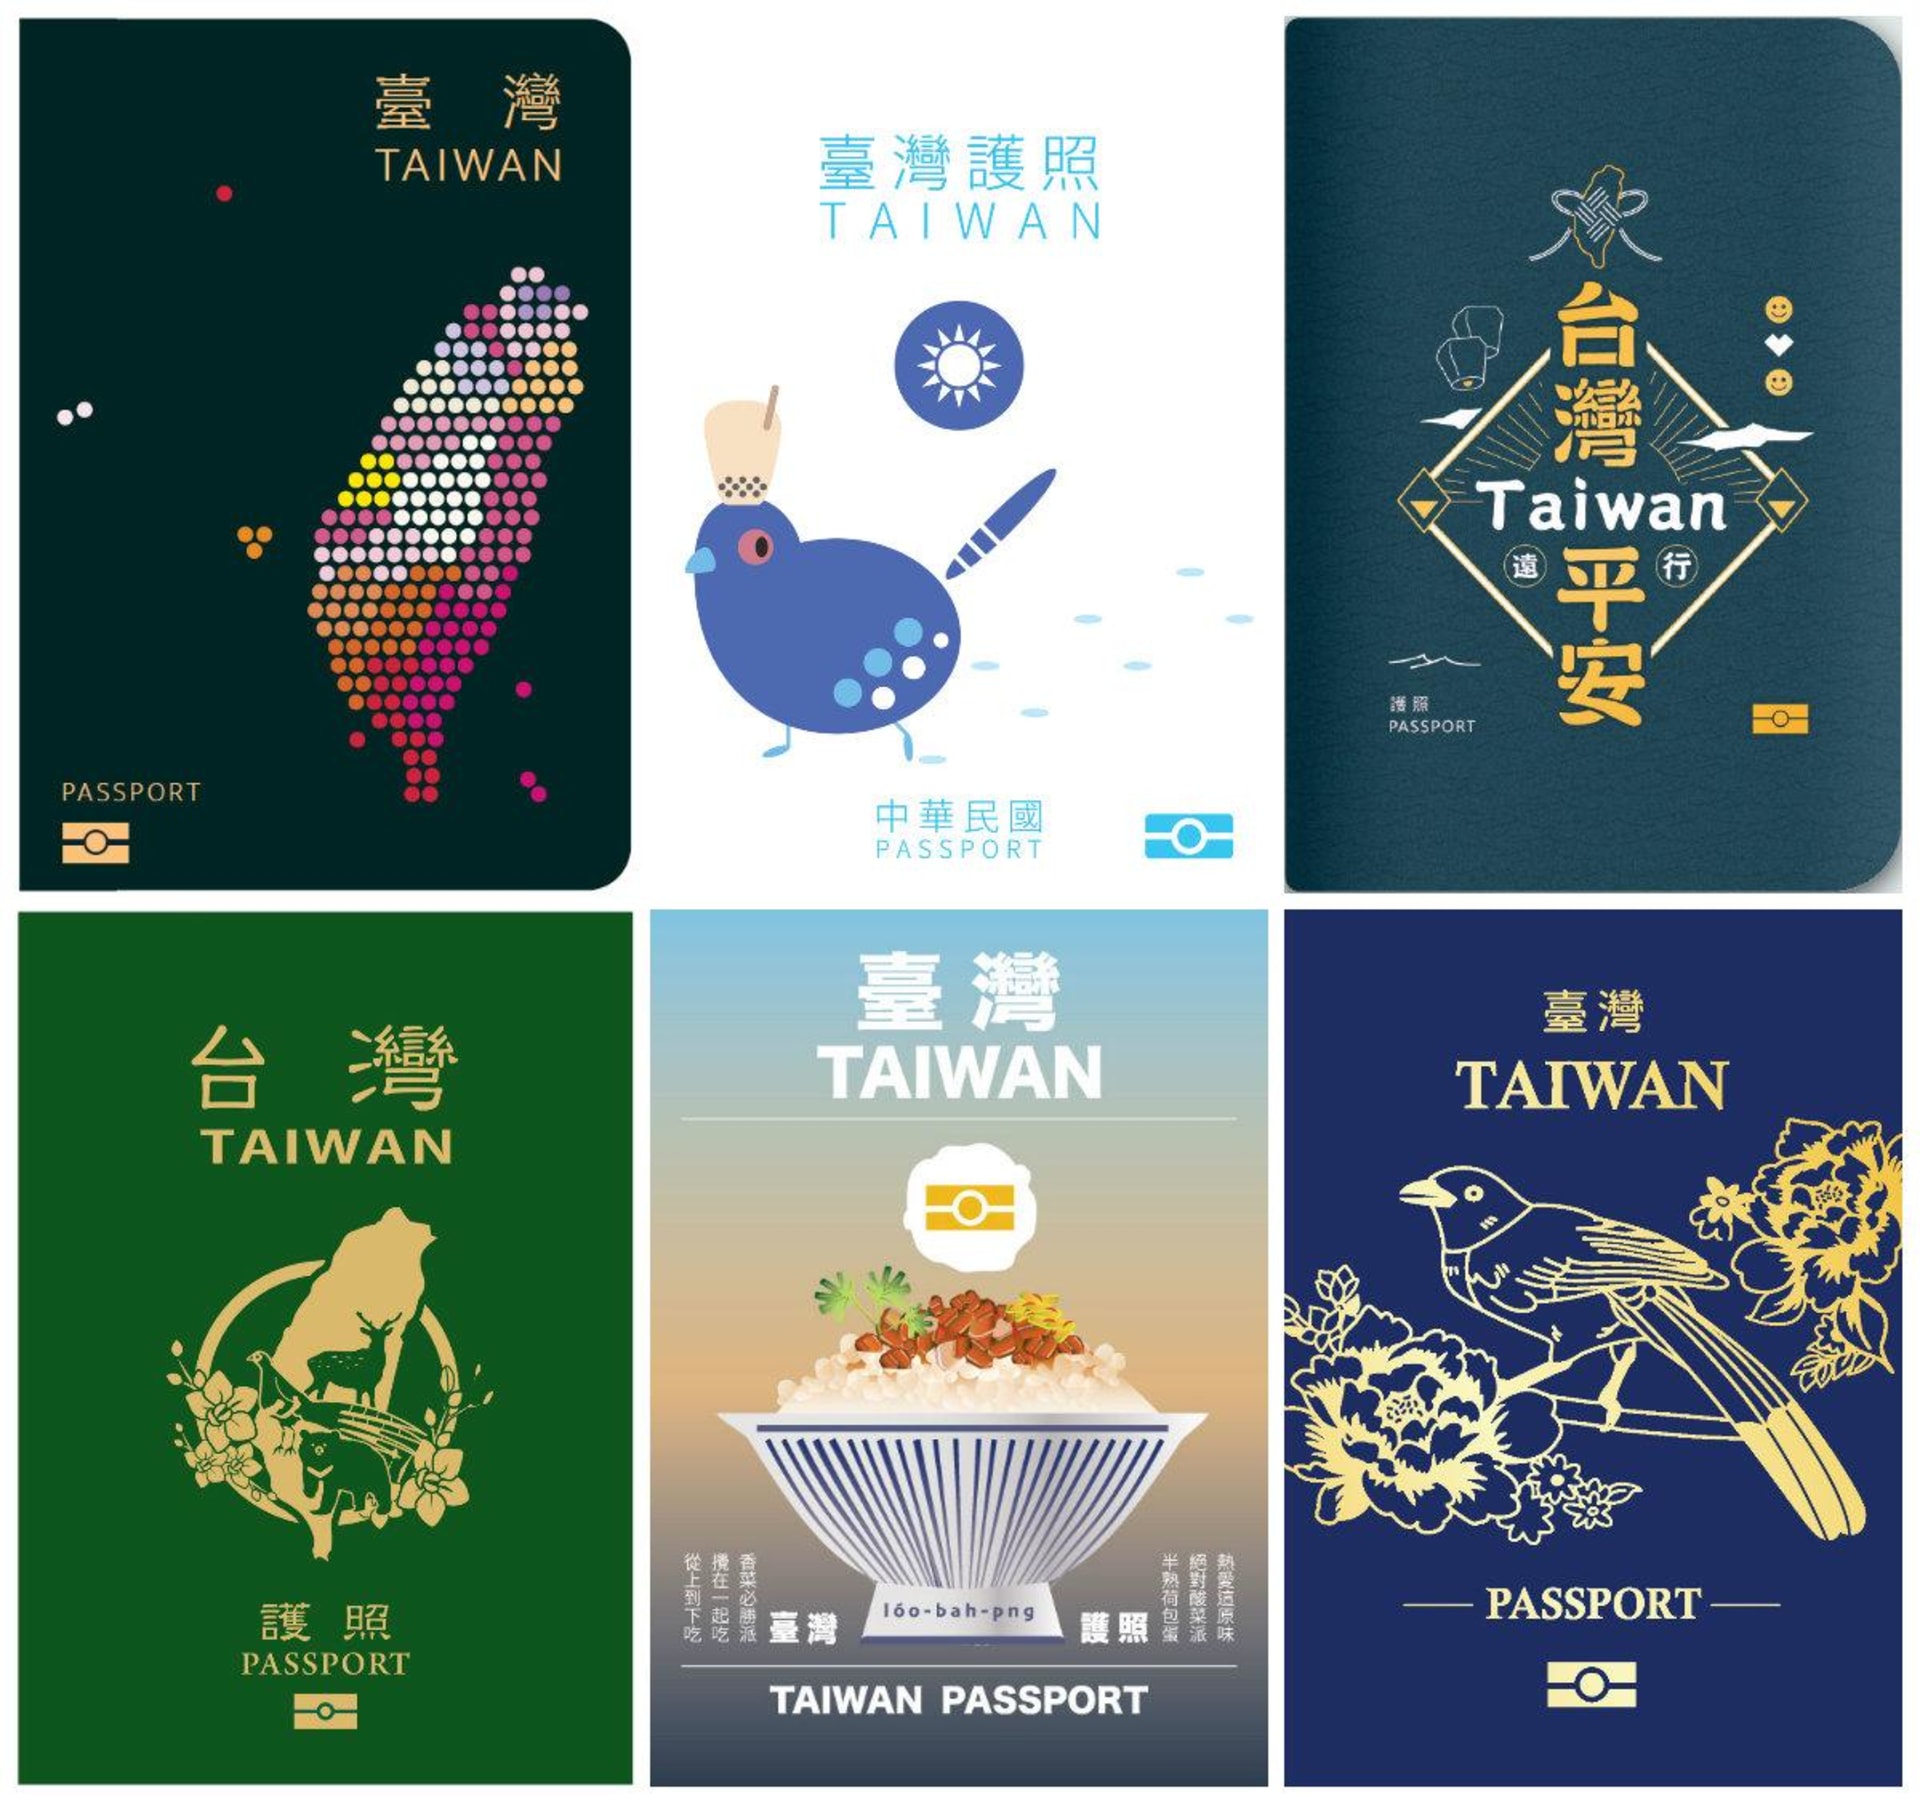 Návrhy nových pasů na Tchaj-wanu byly různé.